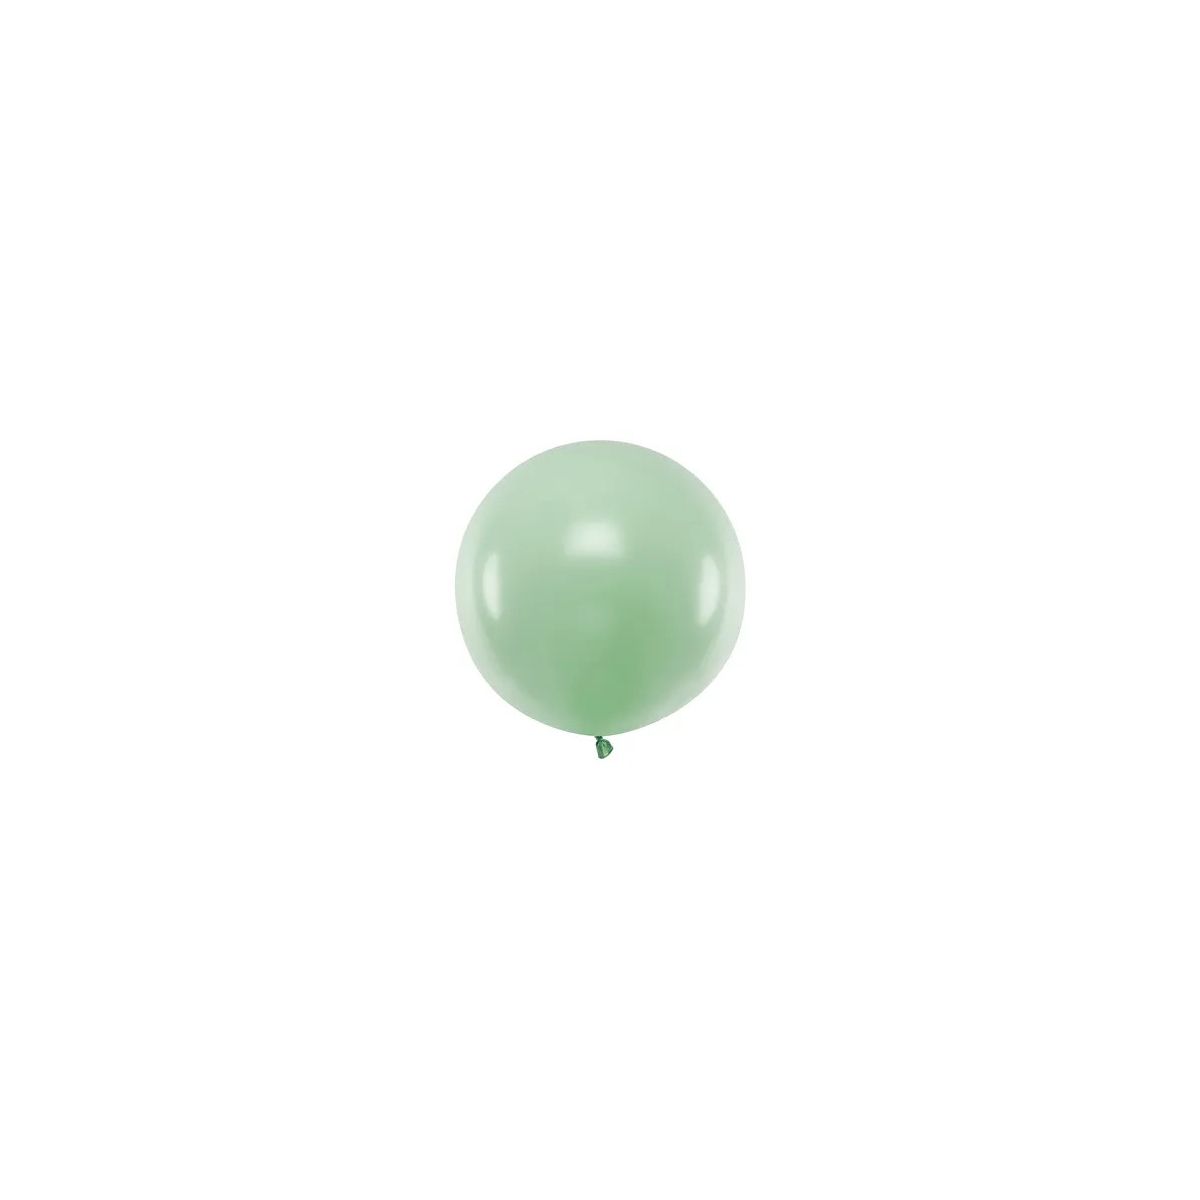 Balon gumowy Partydeco okrągły 60cm, Pastel Pistachio pistacjowy 600mm (OLBOM-096)